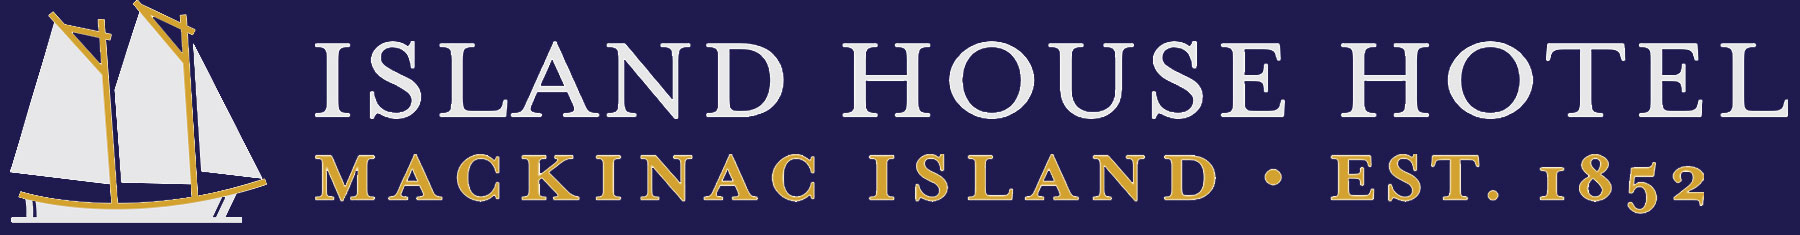 
Island House Hotel
   in Mackinac Island